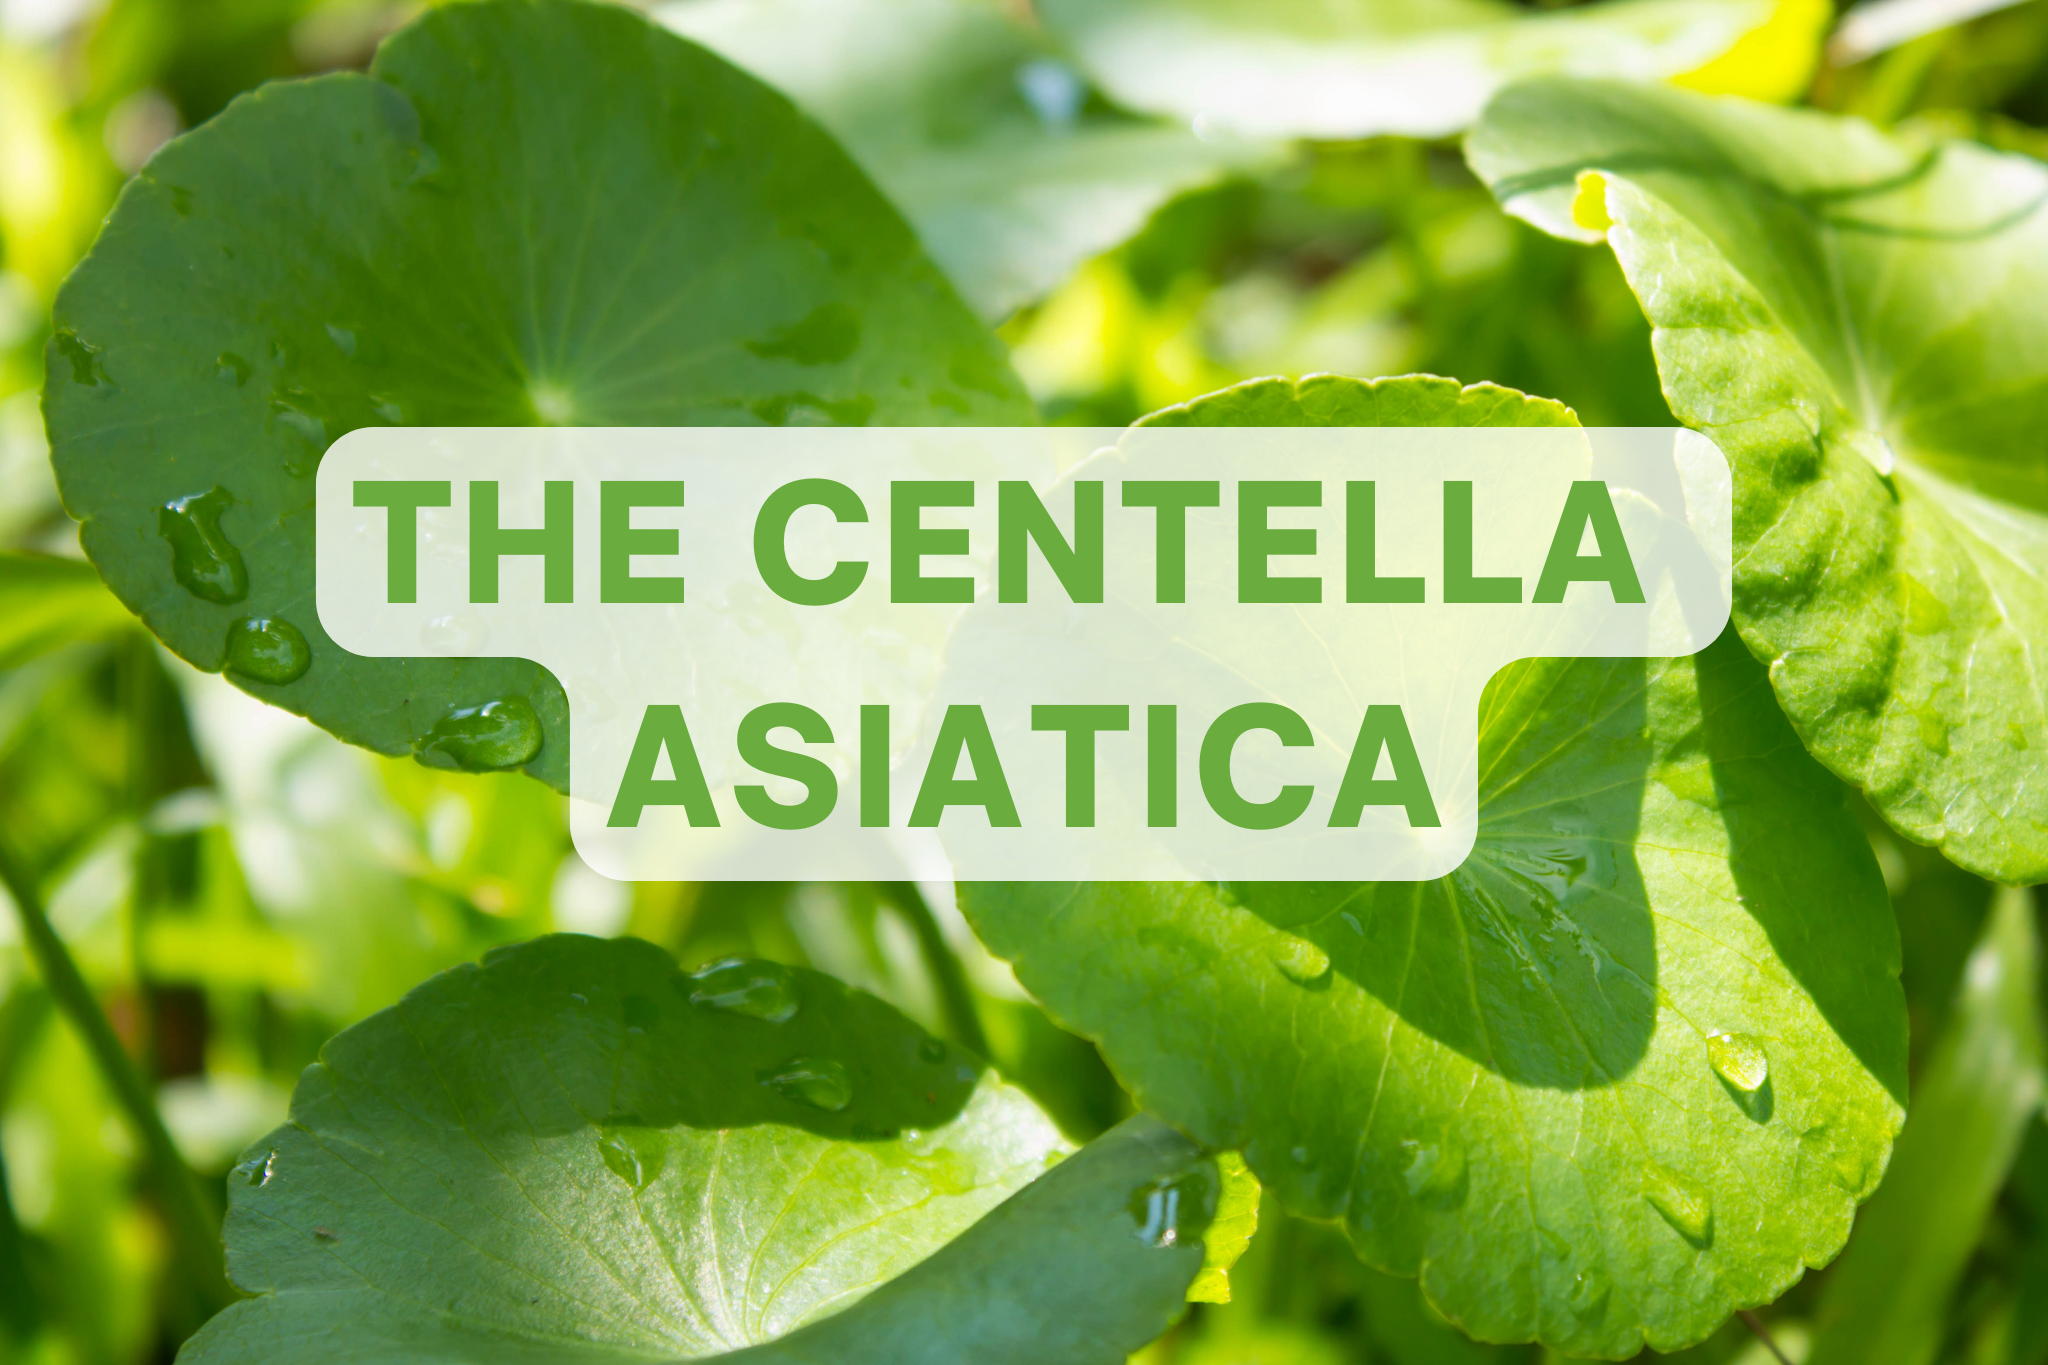 The Centella